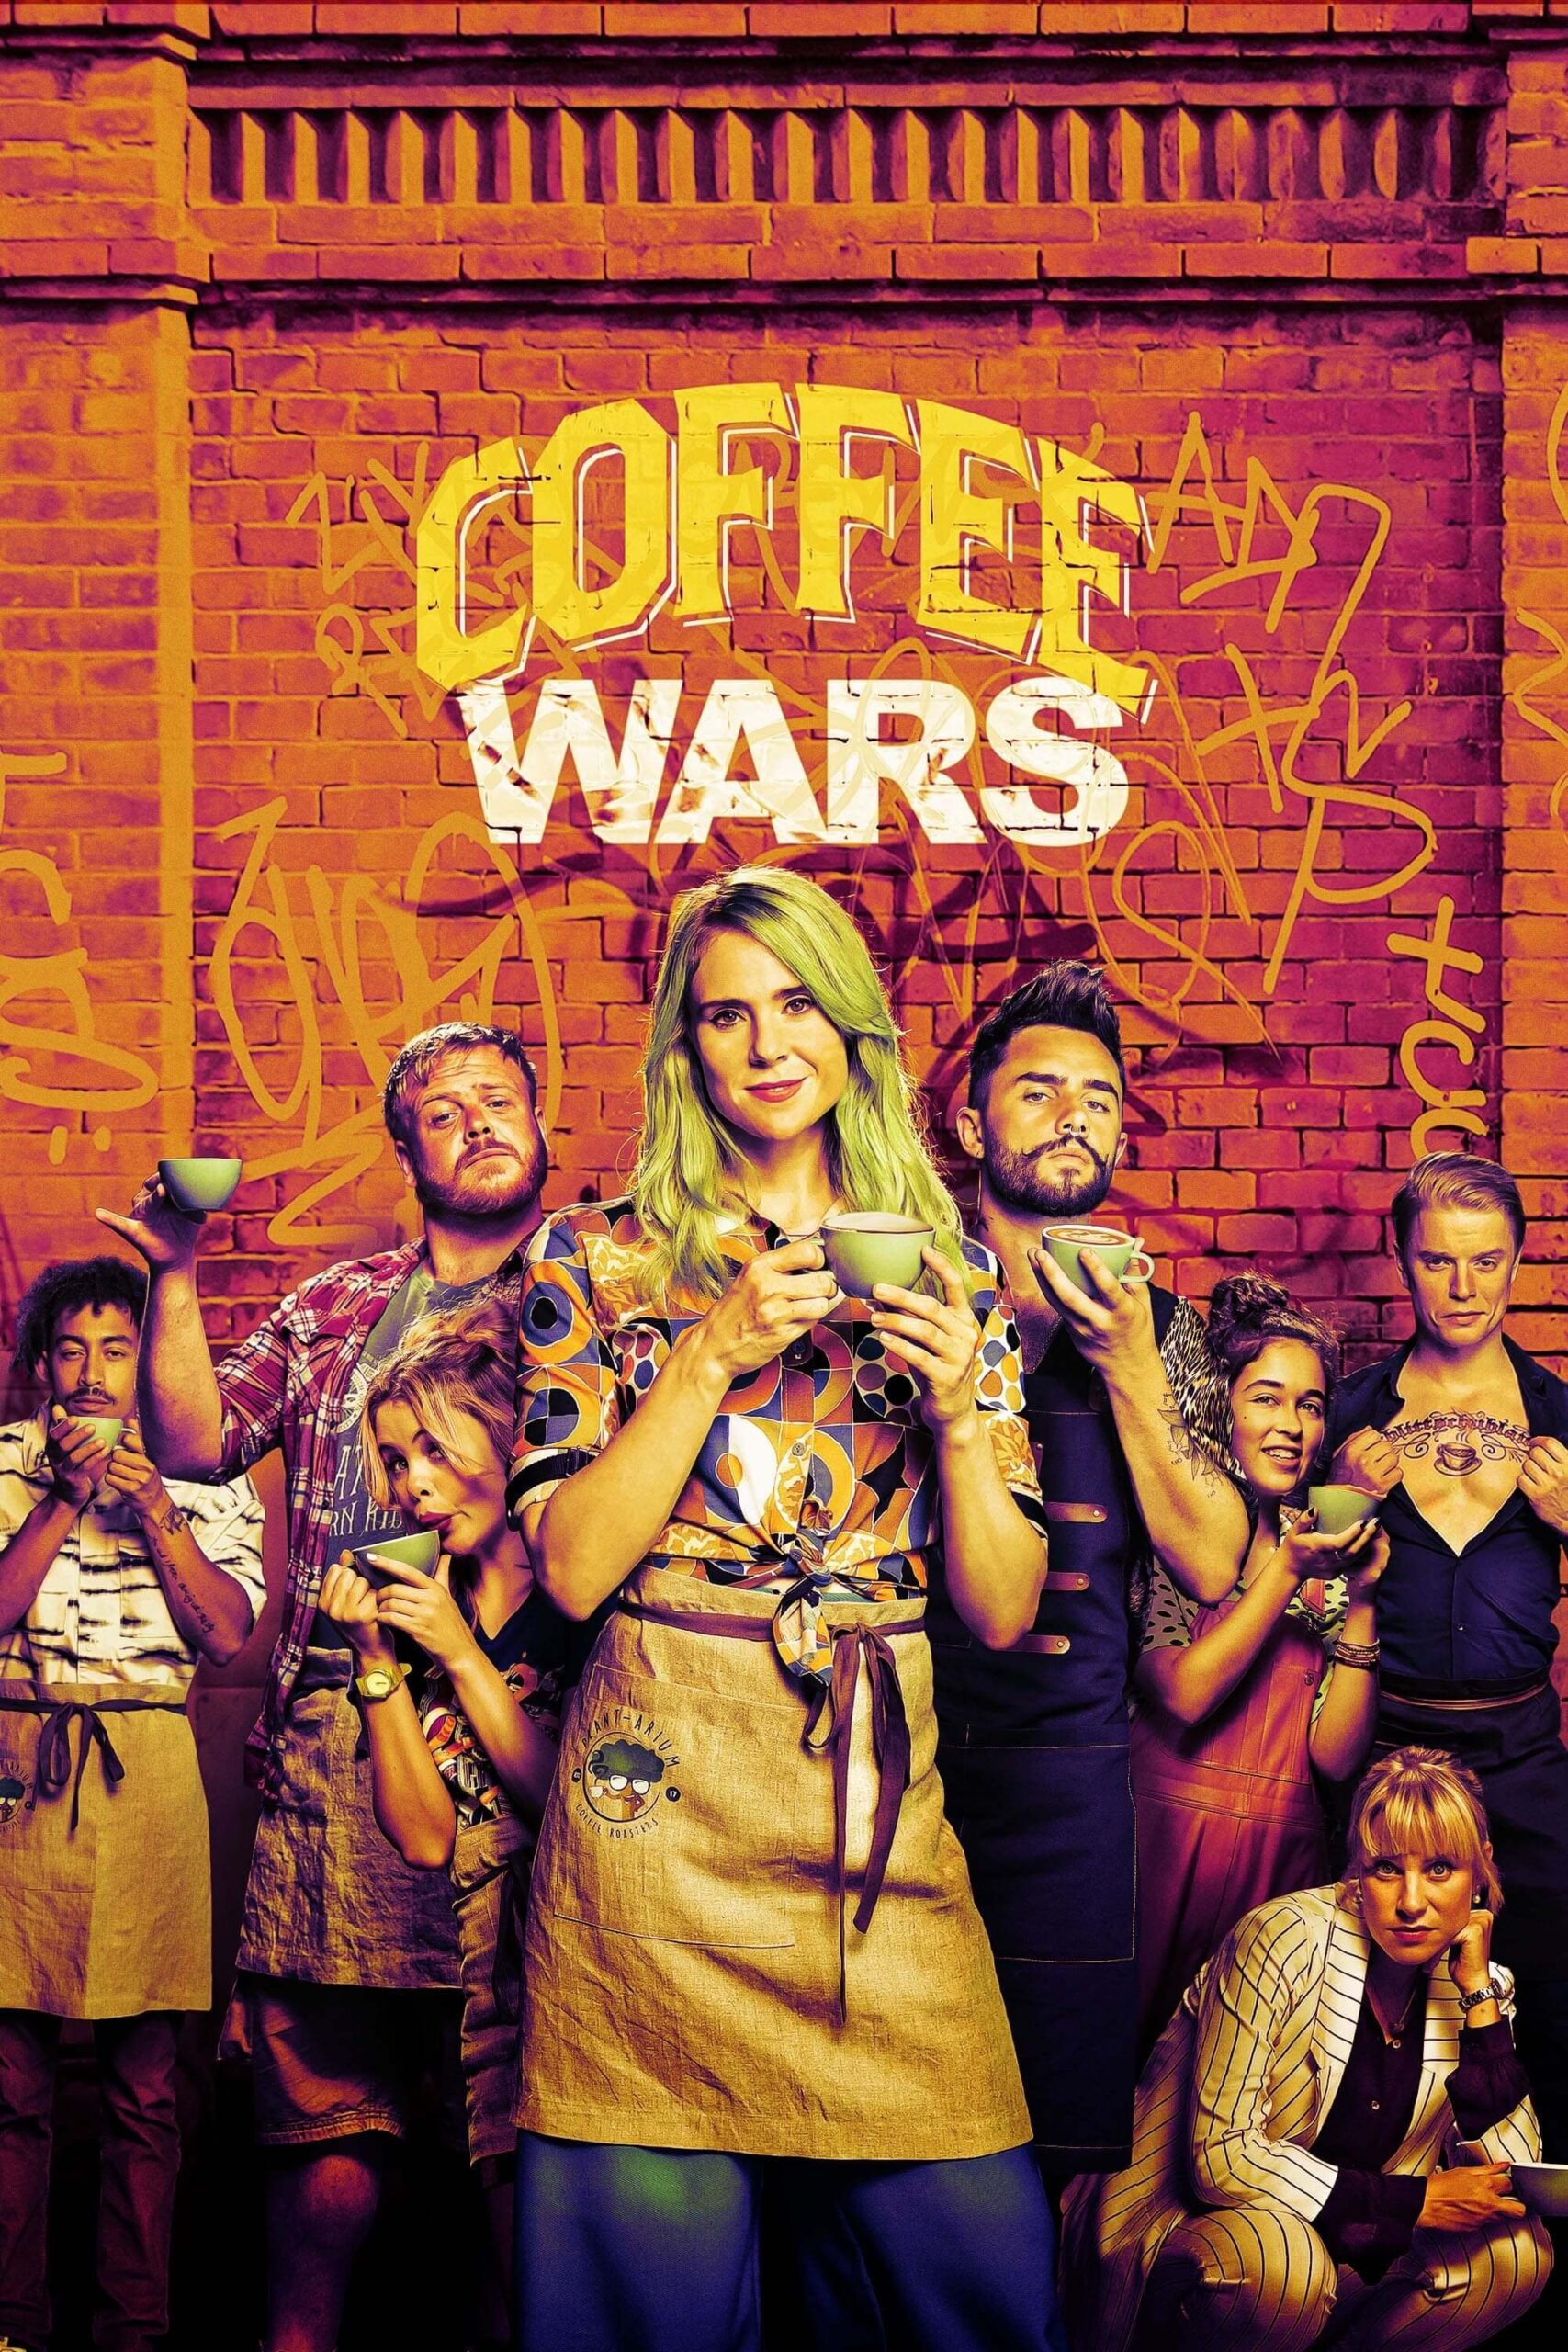 جنگ قهوه (Coffee Wars)